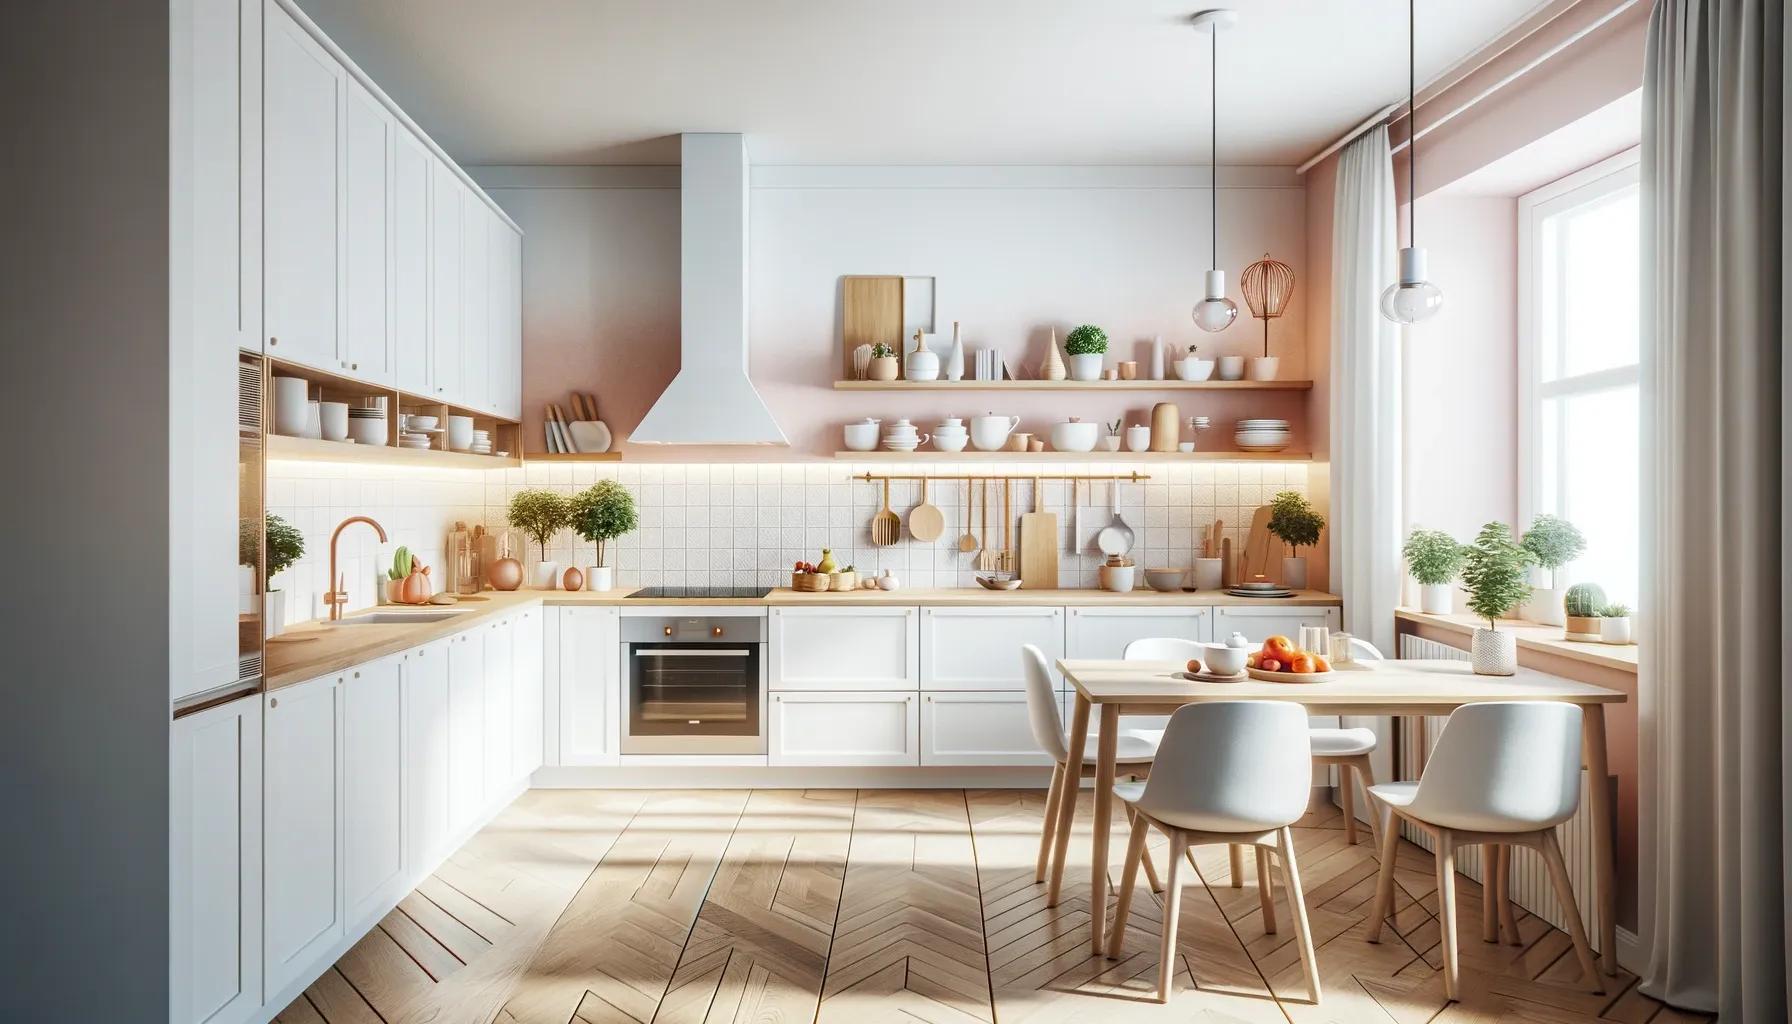 Eine moderne Küche mit einem klaren, weißen Design. Die Schränke, Arbeitsplatten und Geräte sind alle weiß und verleihen der Küche einen eleganten und minimalistischen Look.